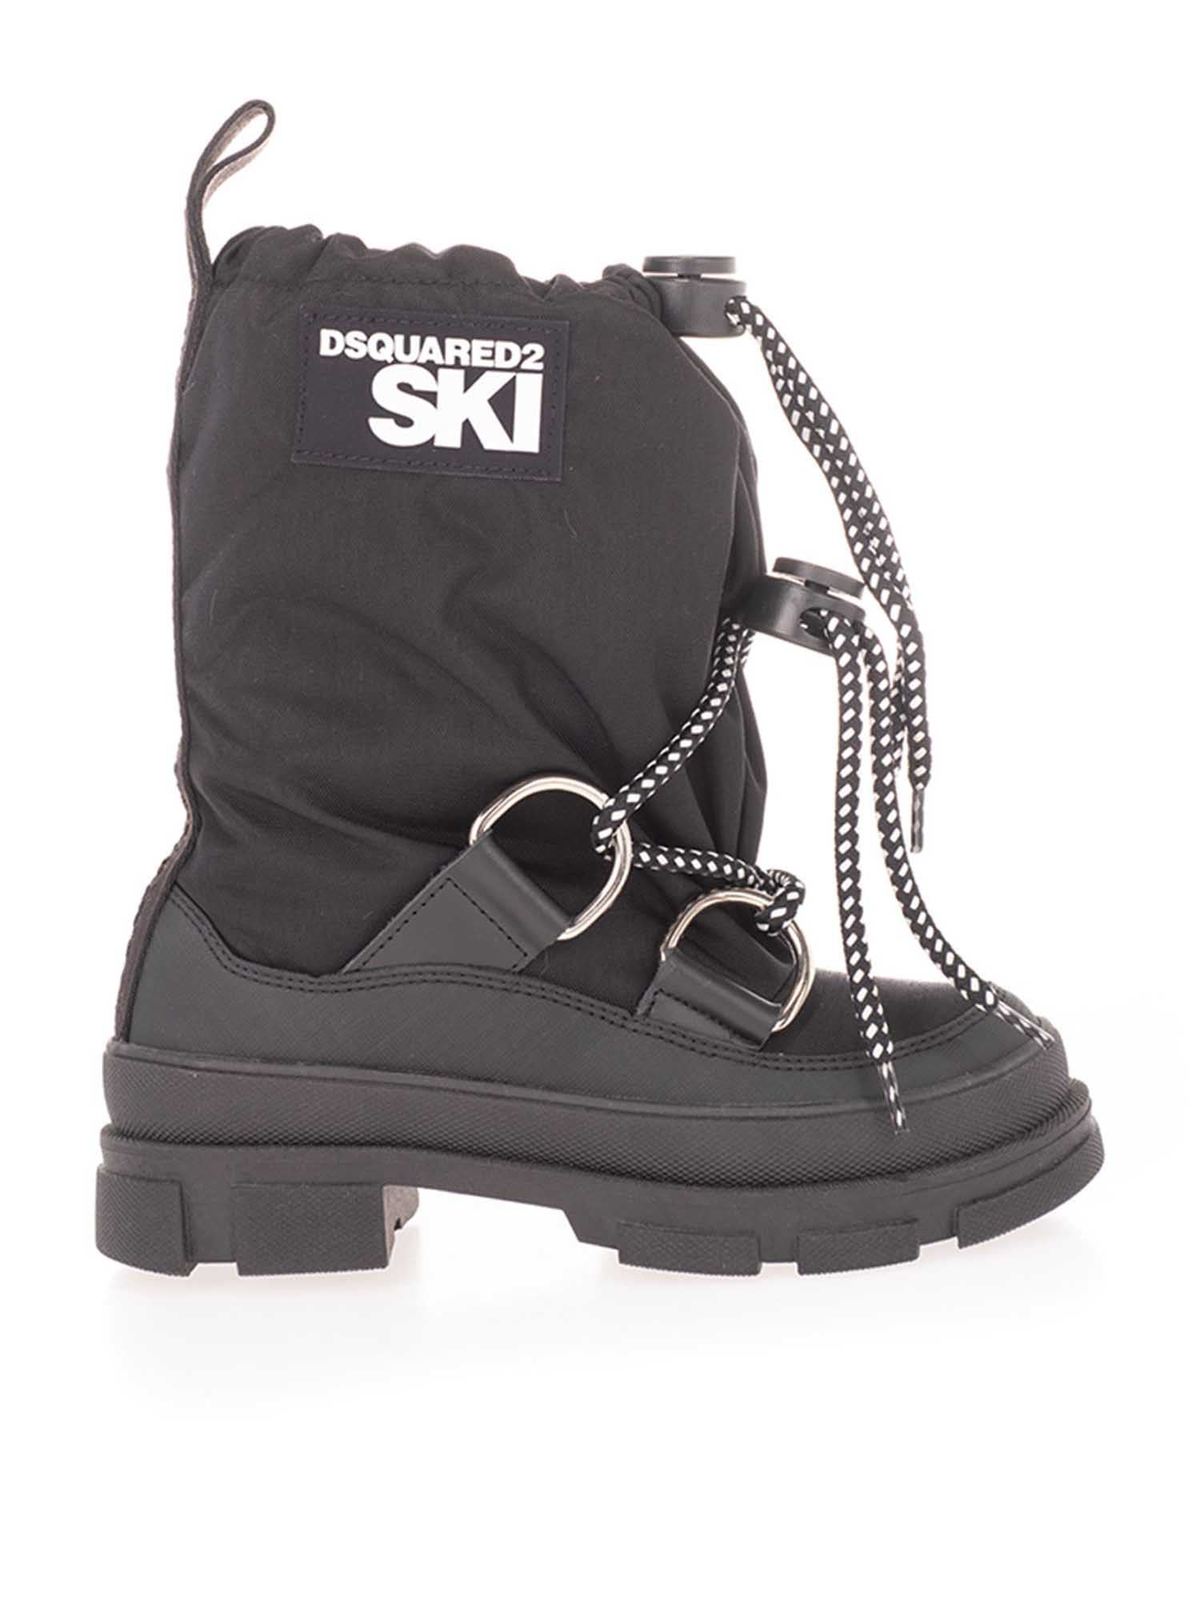 dsquared2 ski boots